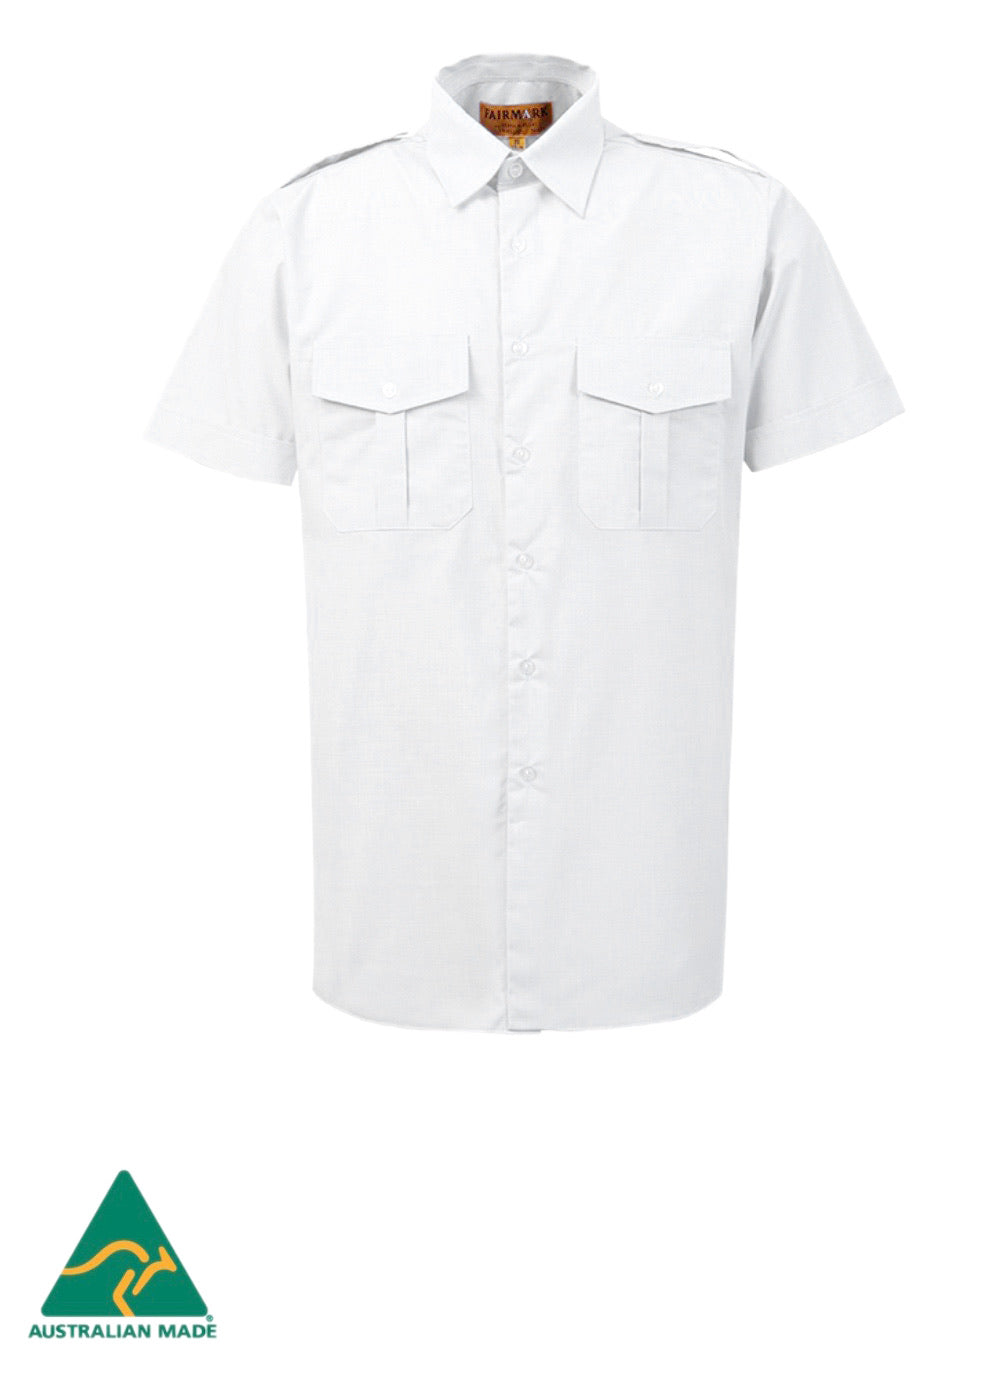 Fairmark Unisex Short Sleeve White Pilot Shirt